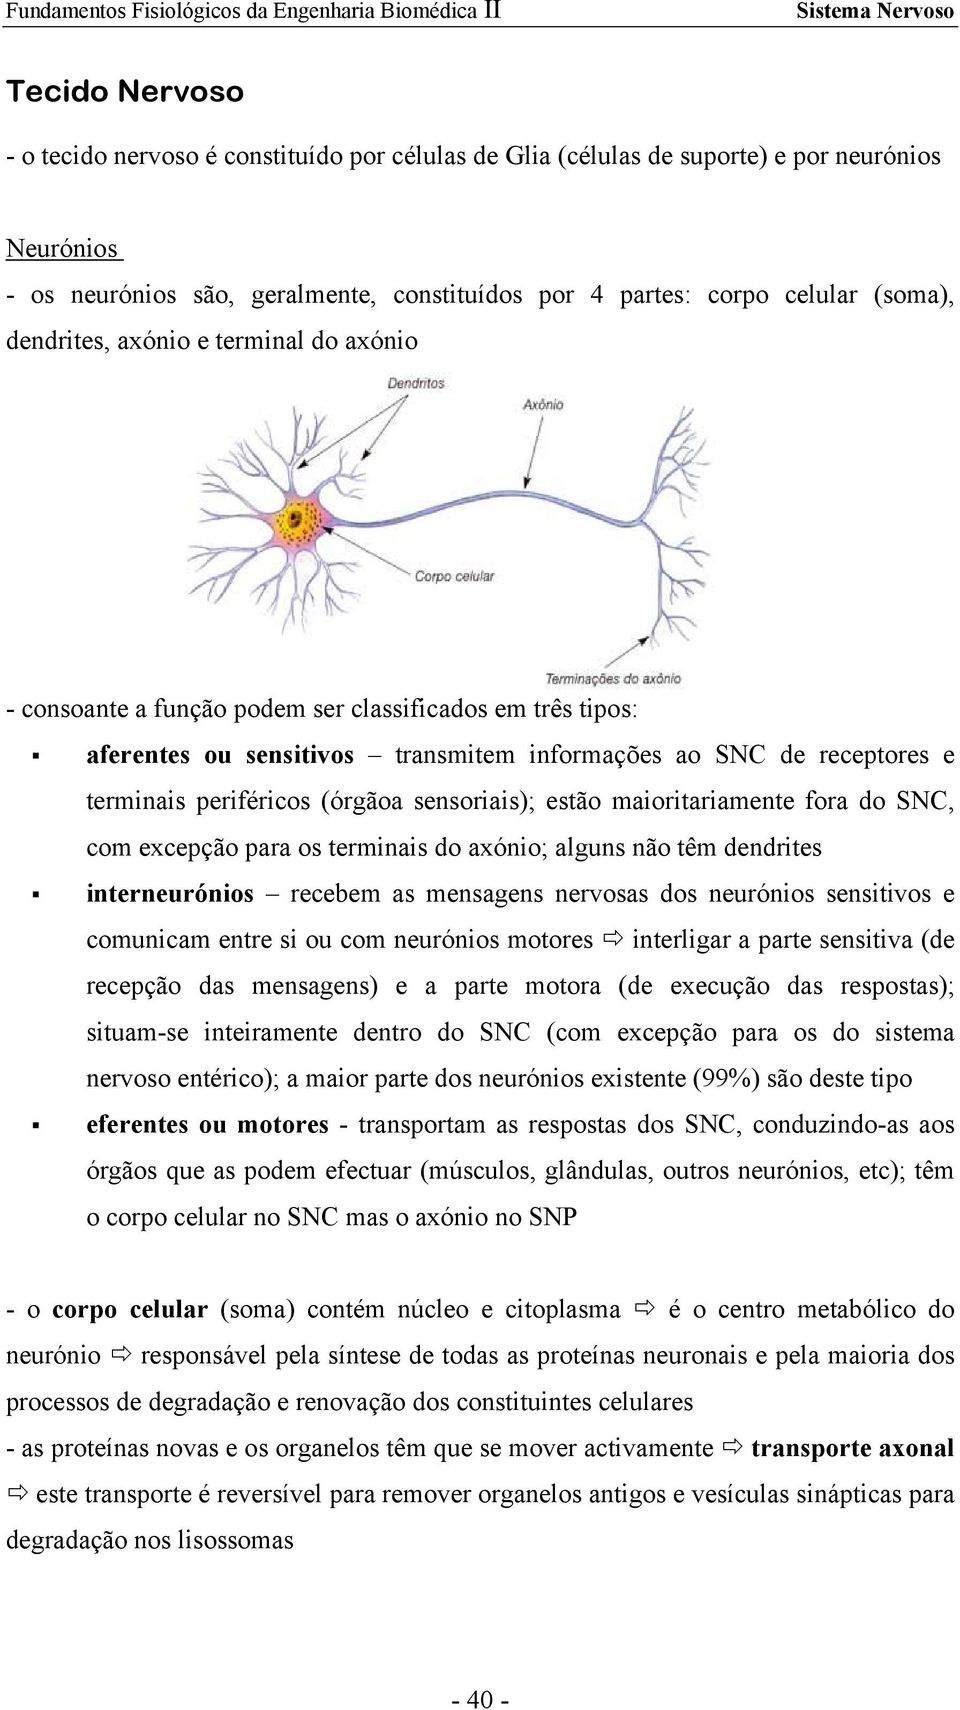 sensoriais); estão maioritariamente fora do SNC, com excepção para os terminais do axónio; alguns não têm dendrites interneurónios recebem as mensagens nervosas dos neurónios sensitivos e comunicam